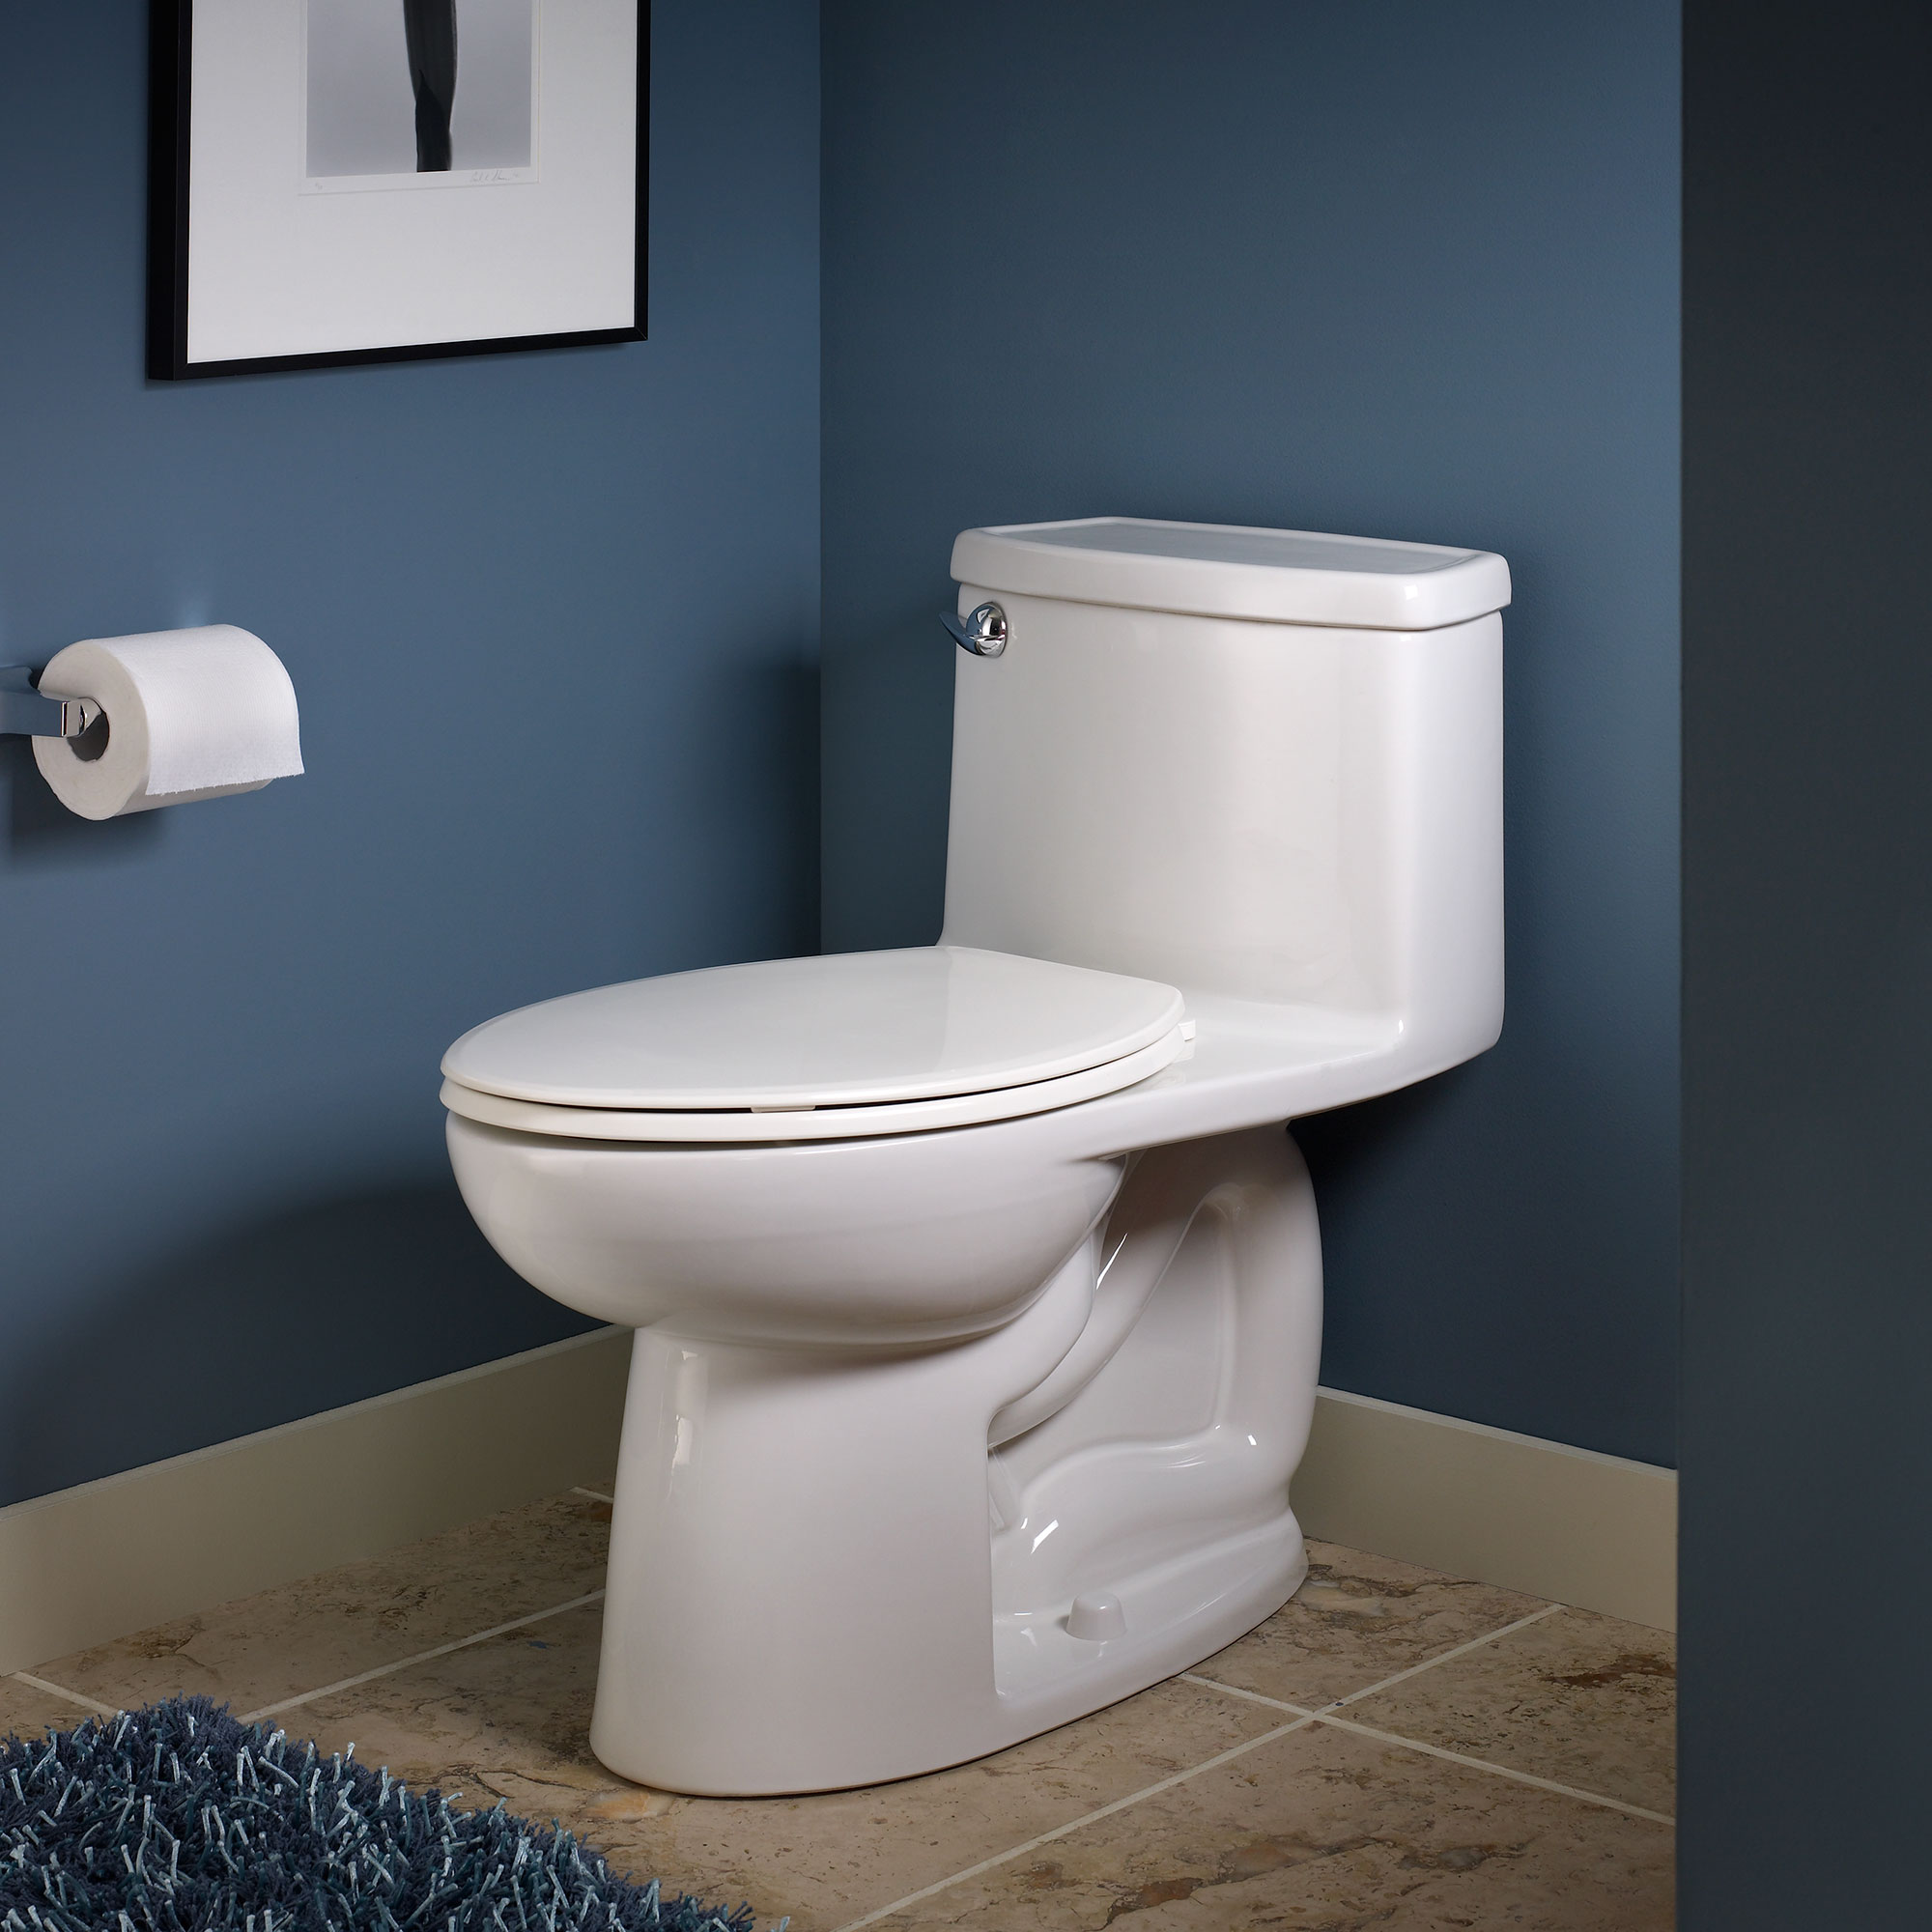 Toilette monopièce Compacte Cadet 3, 1,28 gpc/4,8 lpc, à cuvette allongée à hauteur de chaise avec siège